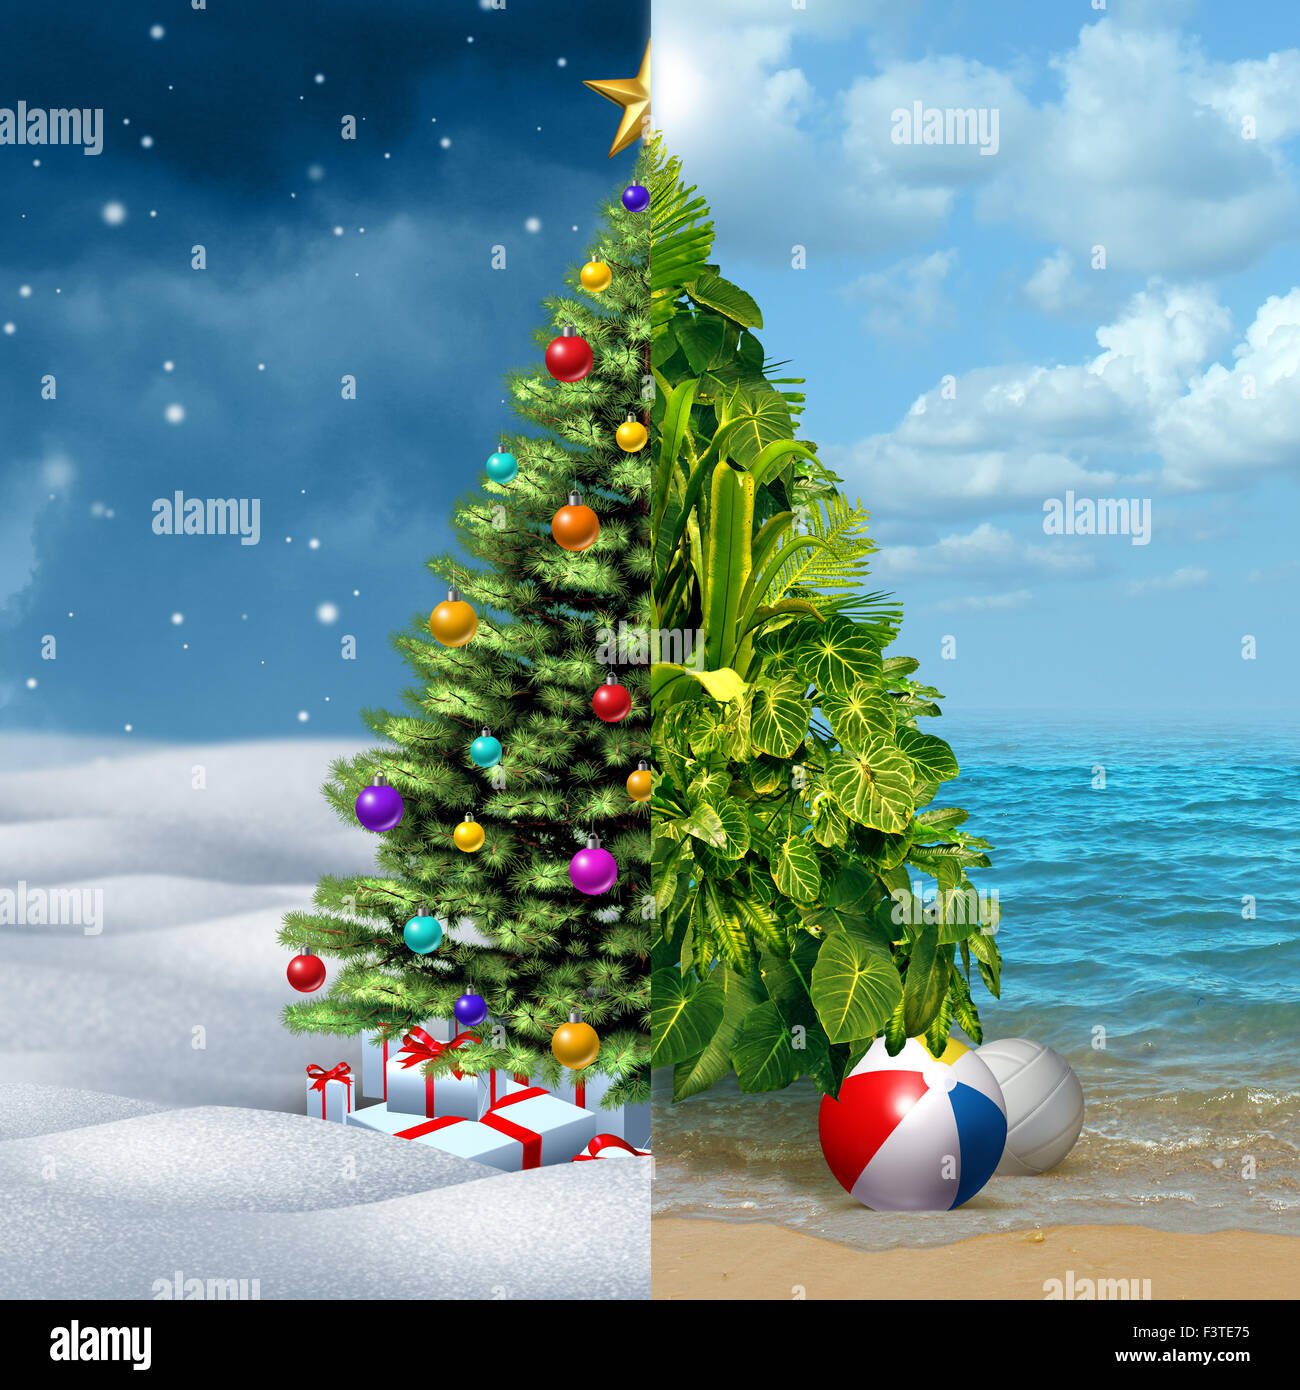 Winter und tropische Weihnachten Urlaub Konzept als eine festliche geschmückten Tanne auf eine halbe und eine tropische Pflanze Anordnung an einem sonnigen warmen Strand als Metapher für Reise- und Tourismduring den Silvester-Urlaub. Stockfoto